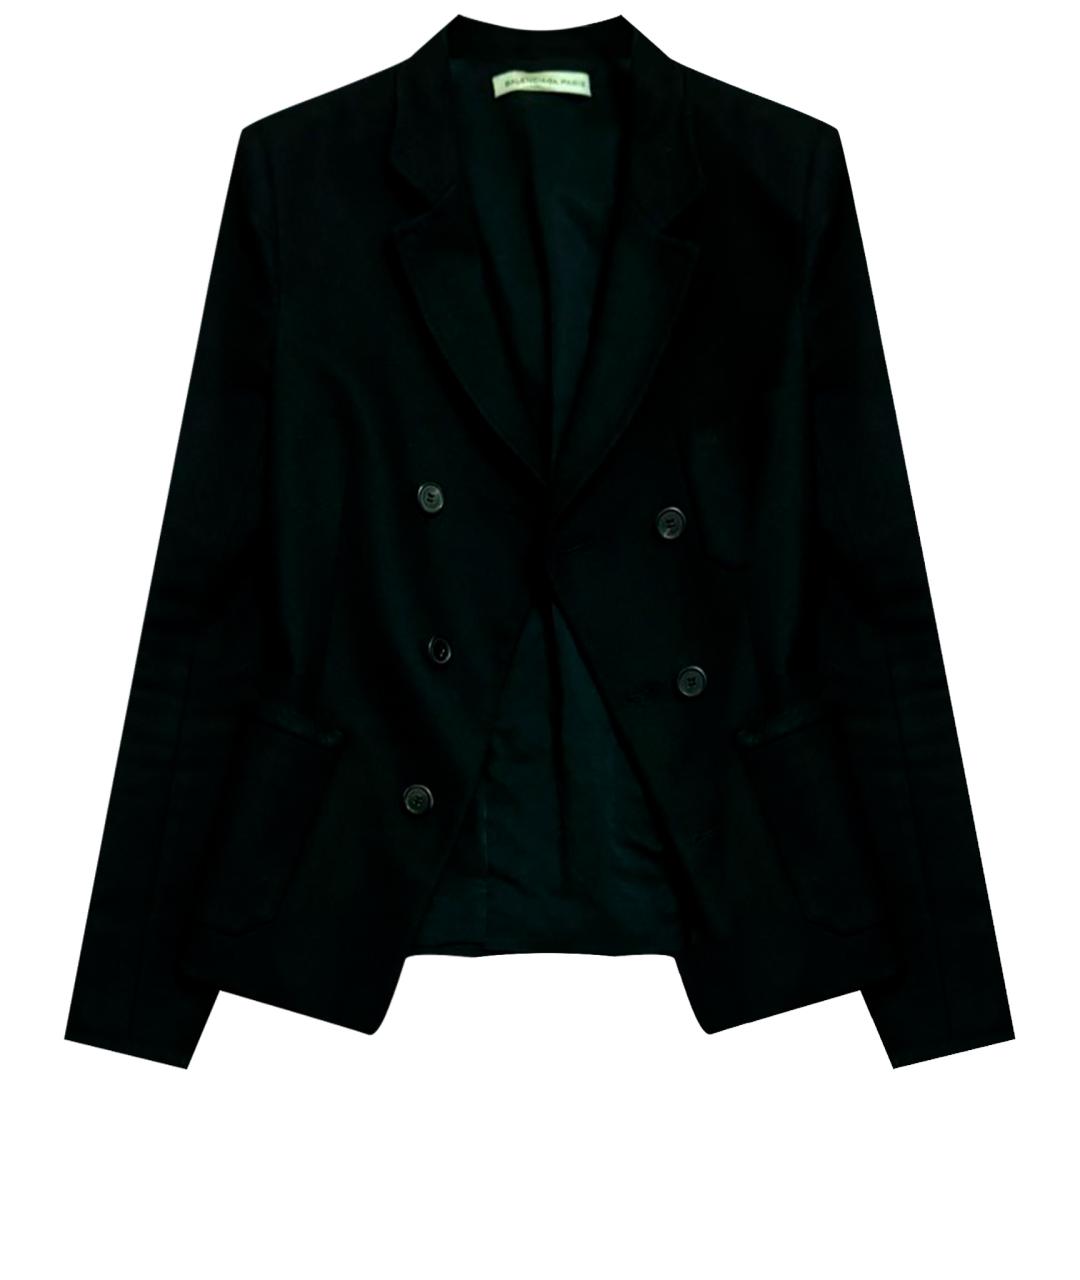 BALENCIAGA Черный шерстяной жакет/пиджак, фото 1